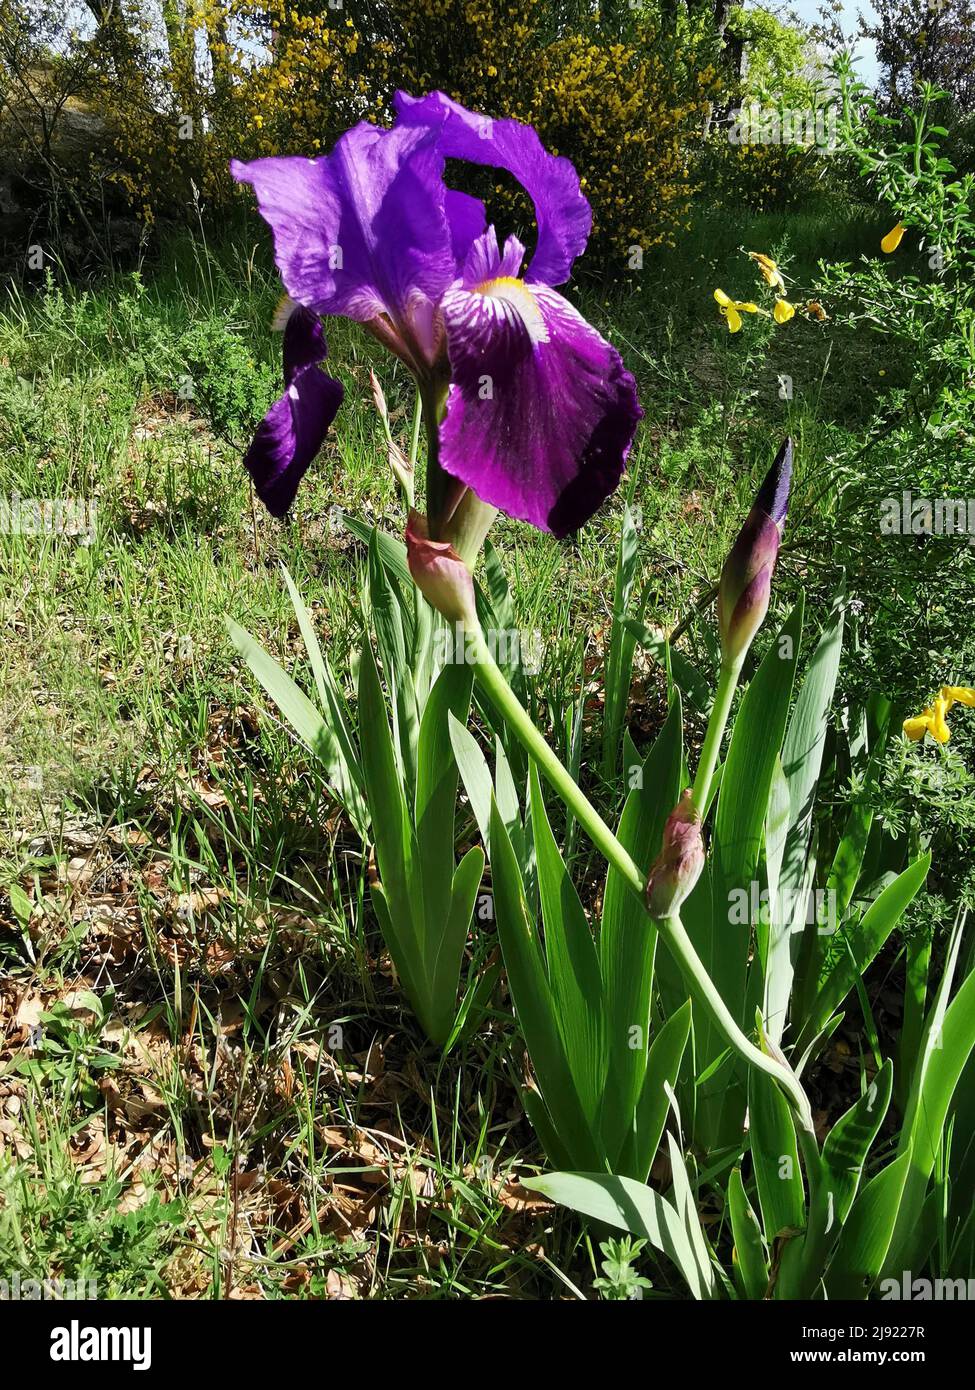 Iris in a garden, France Stock Photo